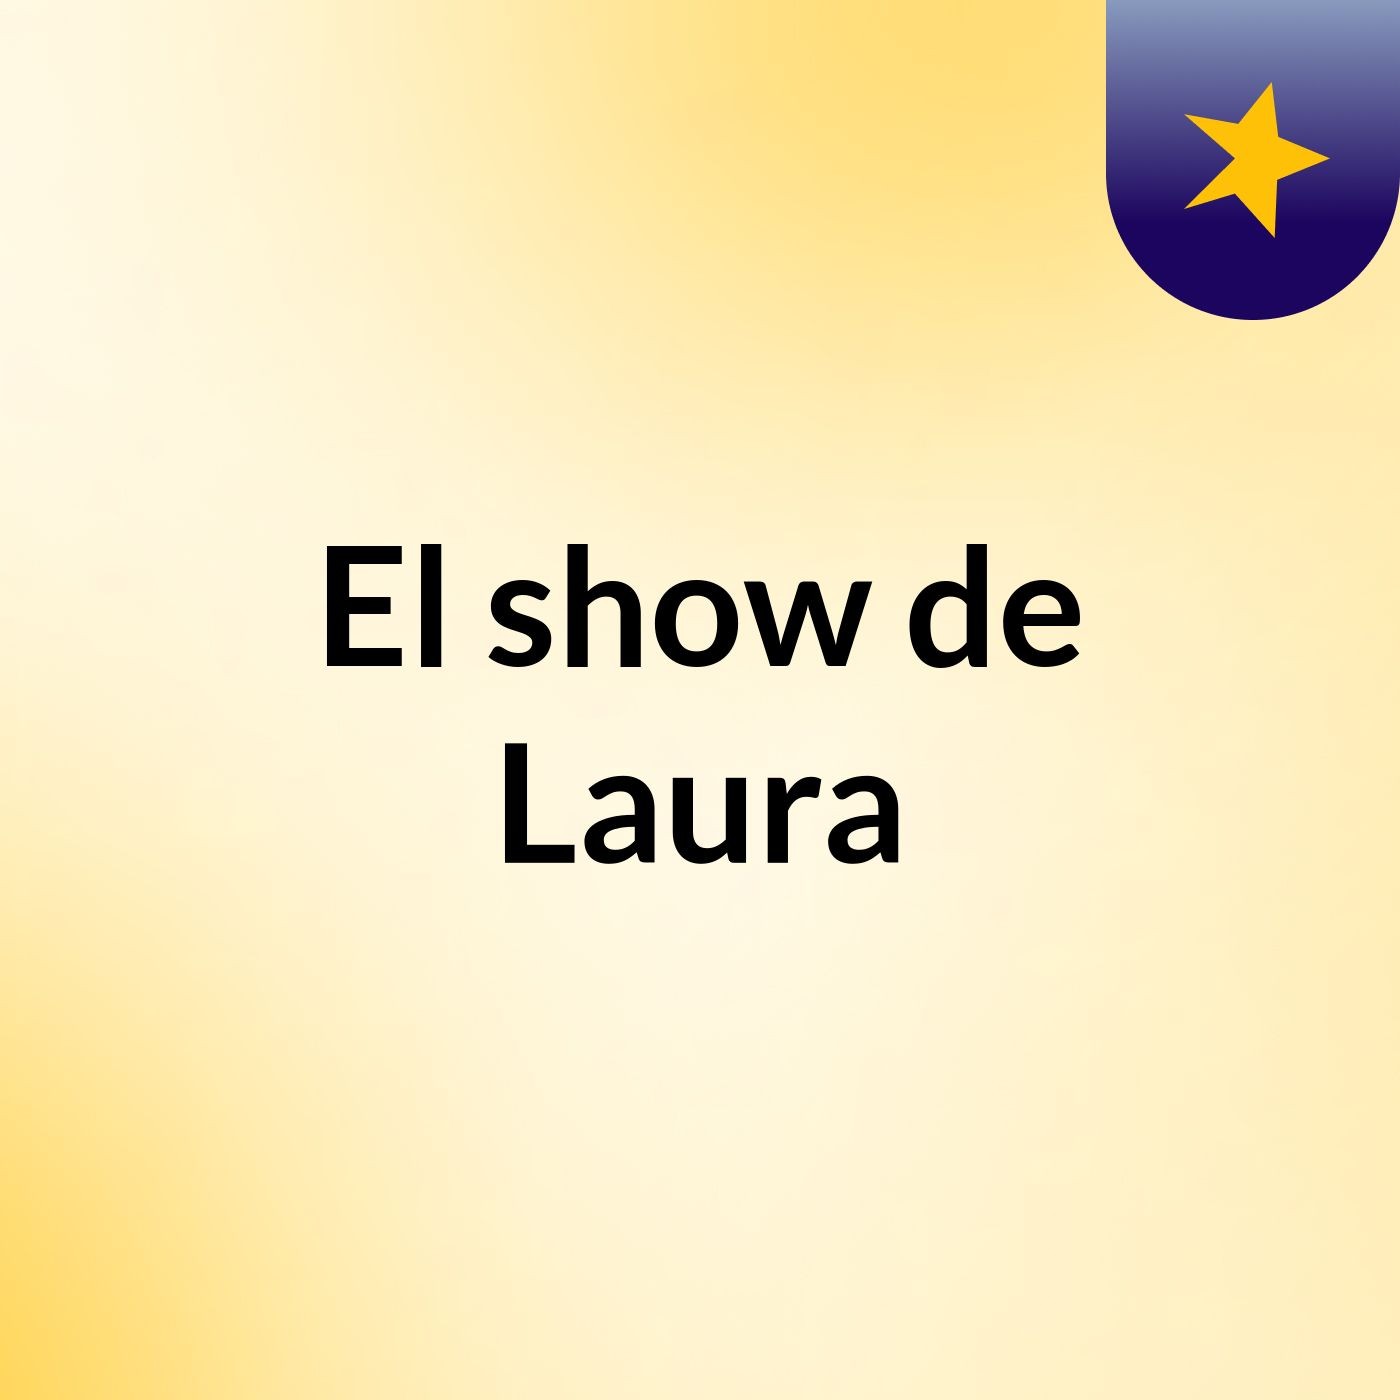 El show de Laura